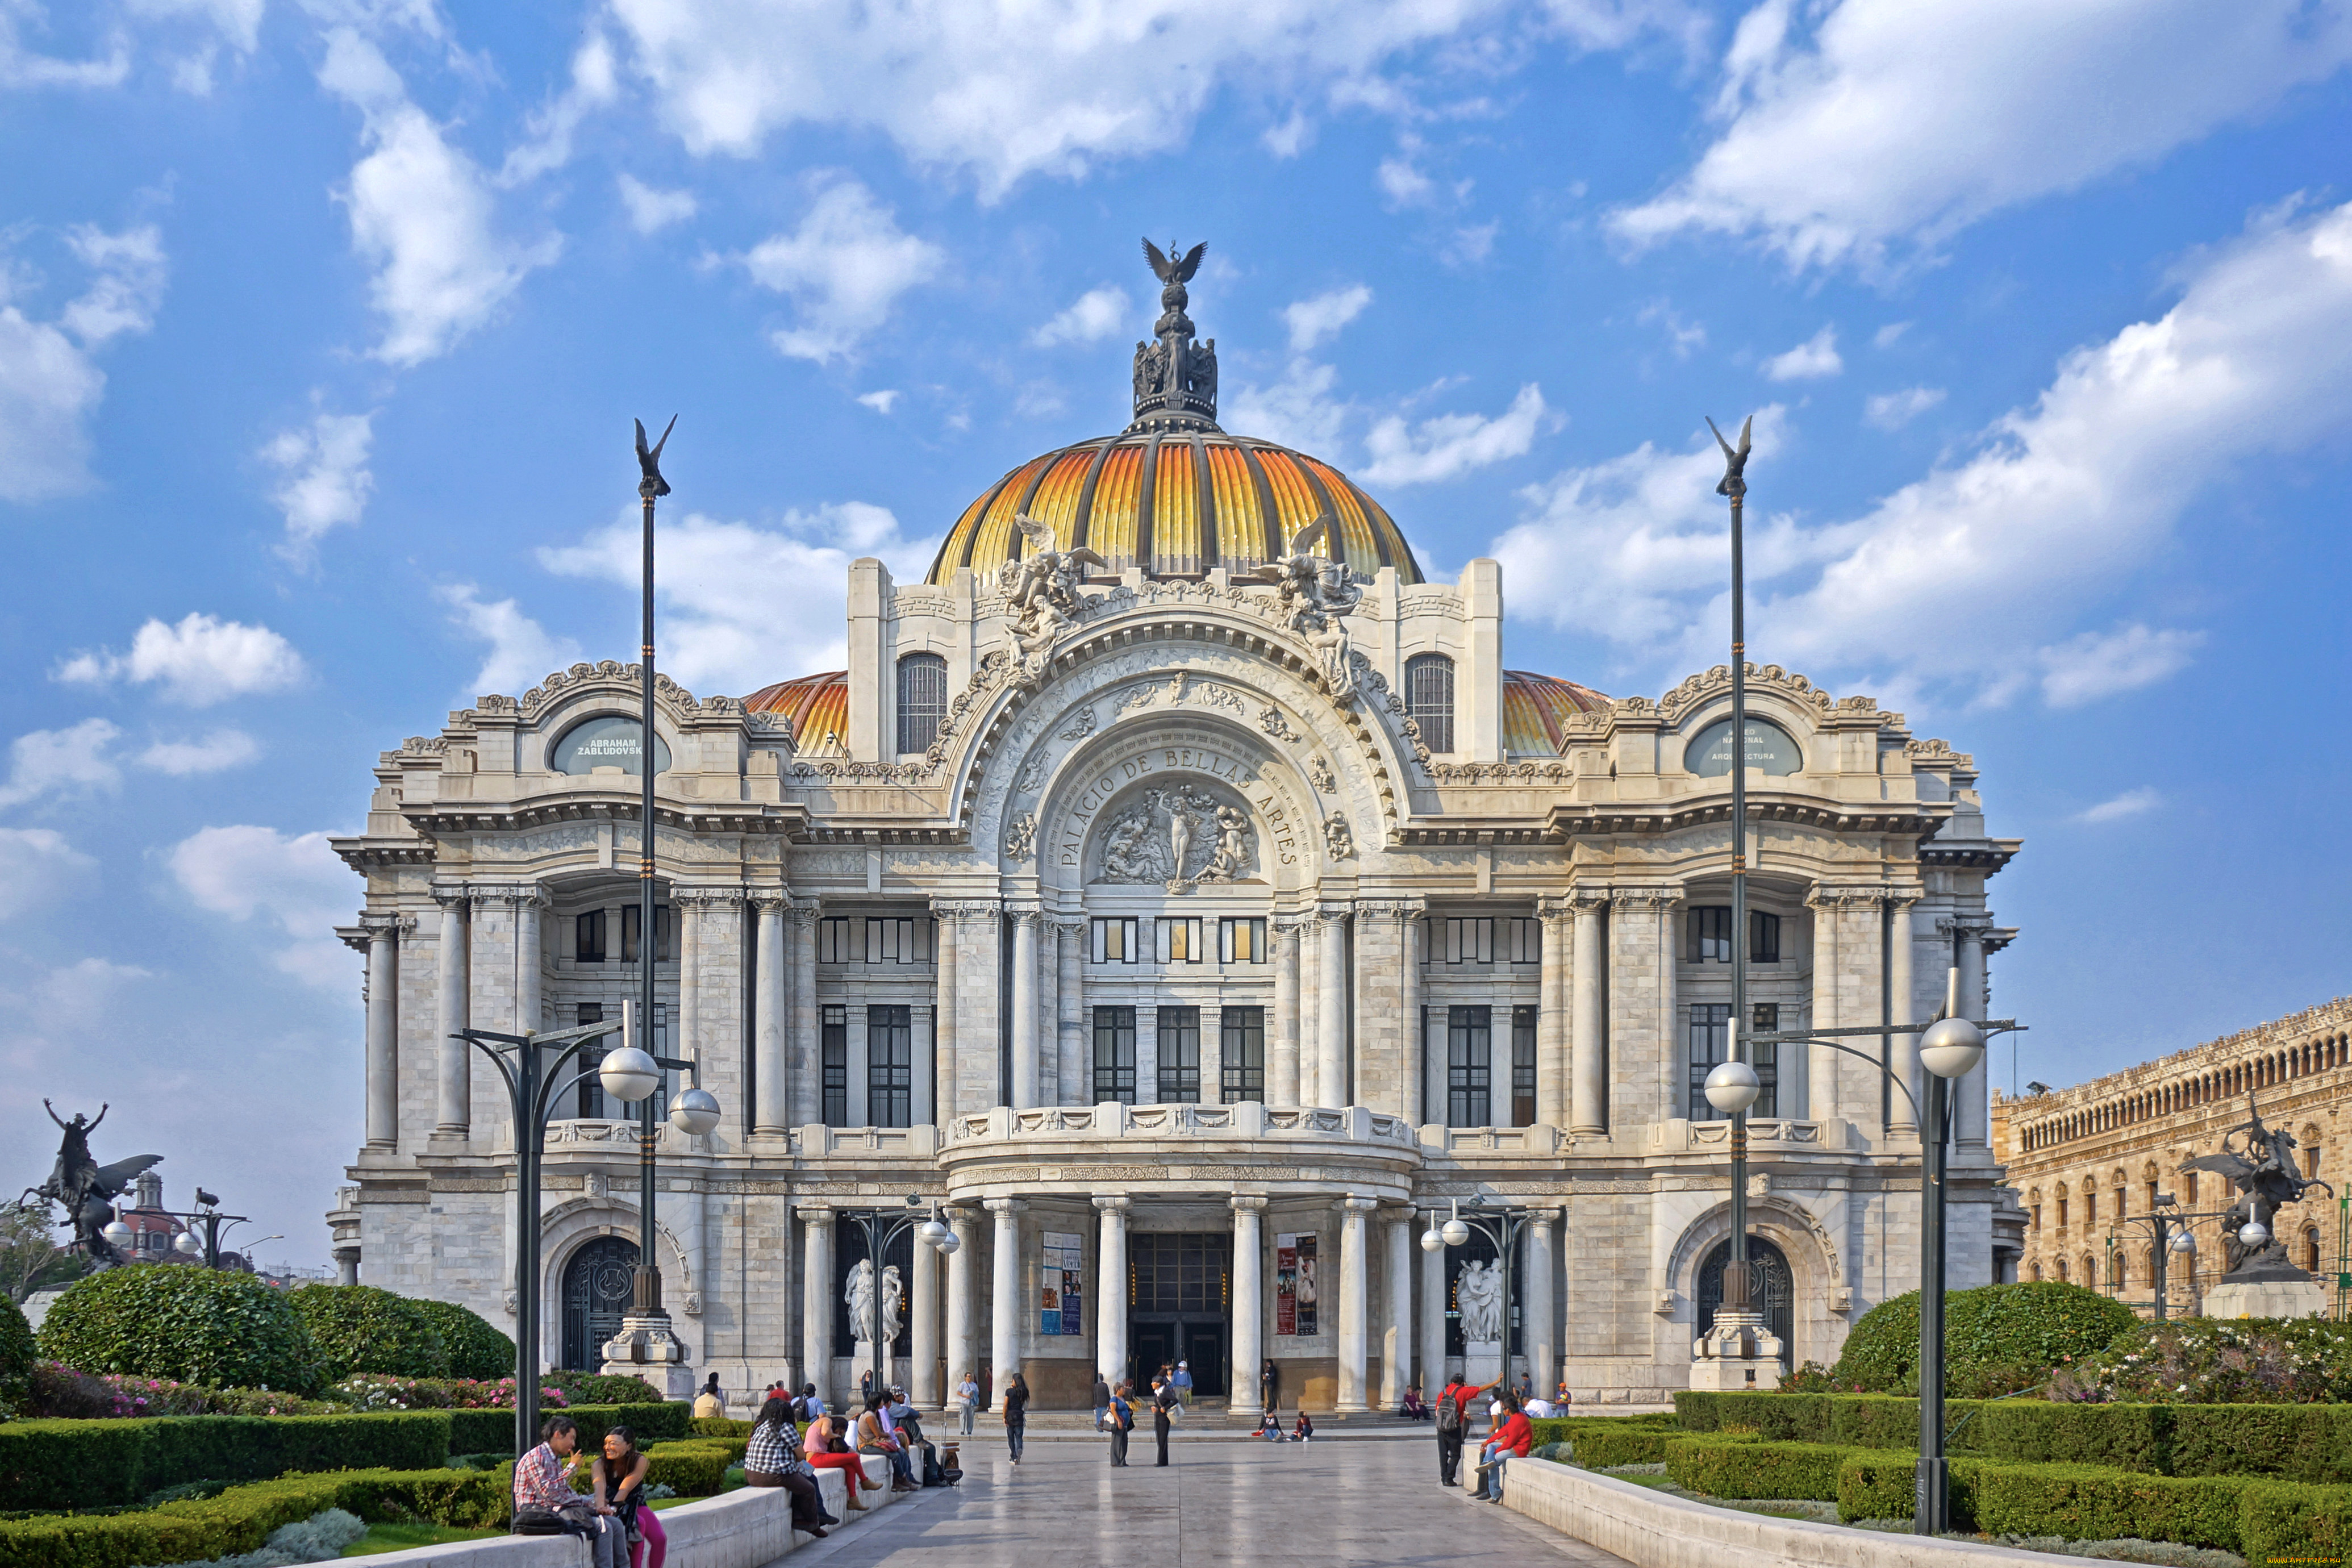 оперный, театр, в, мехико, города, -, исторические, , архитектурные, памятники, мехико, оперный, театр, palacio, de, bellas, artes, дворец, изящных, искусств, мексика, каррарский, мрамор